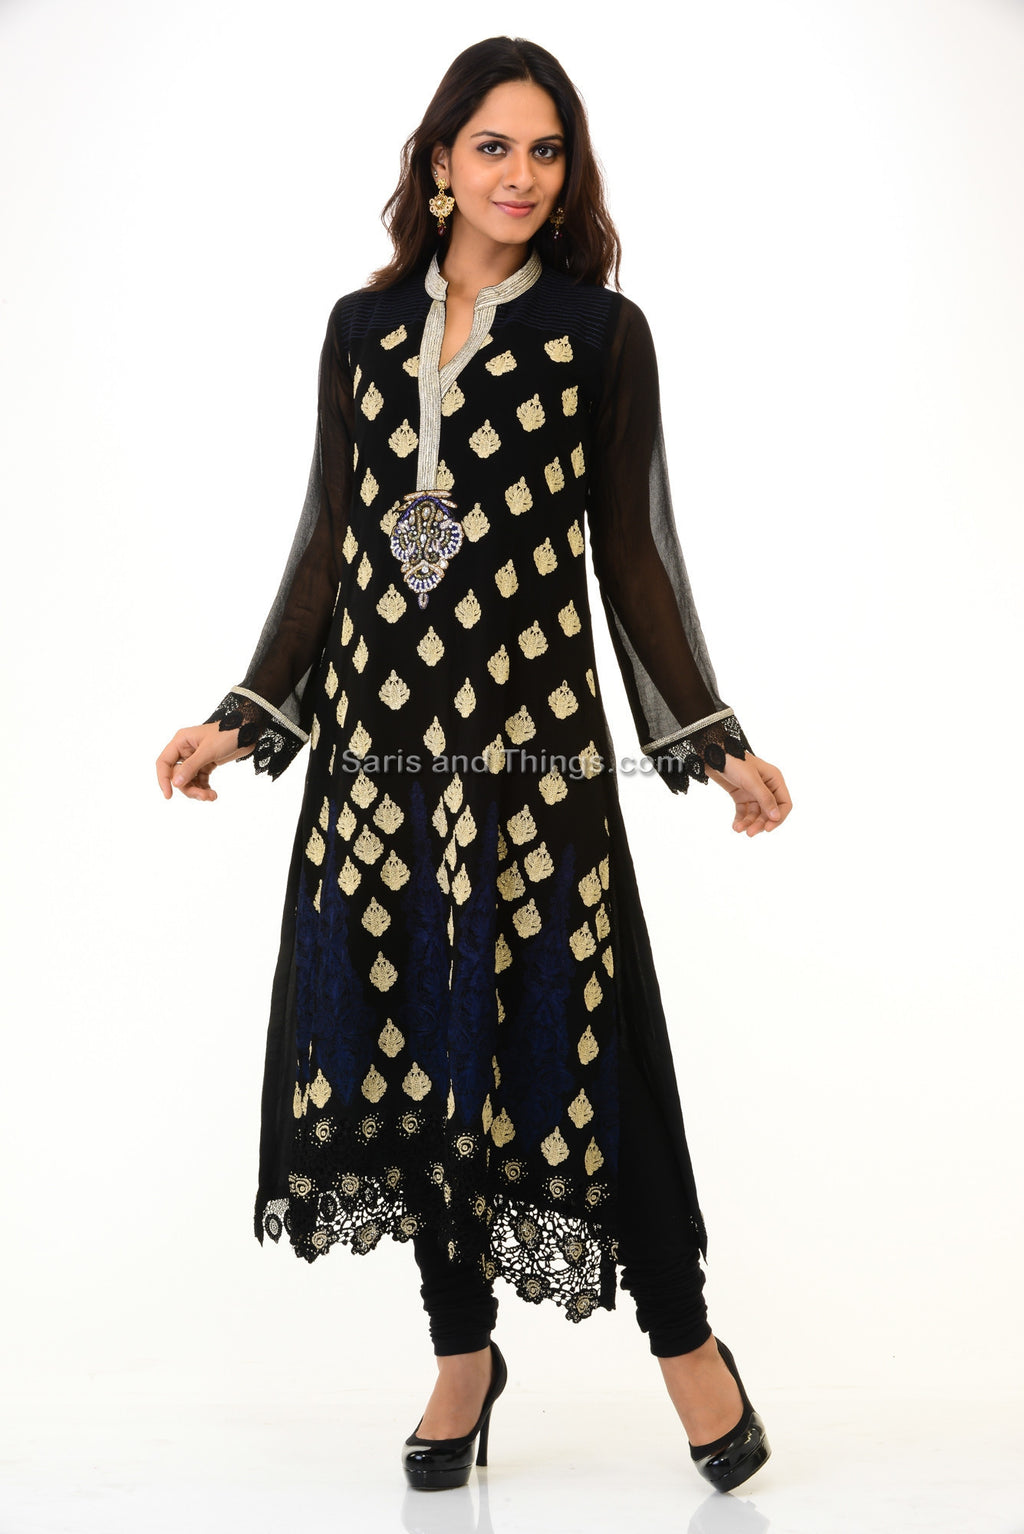 Smart Black Kurti – Saris and Things